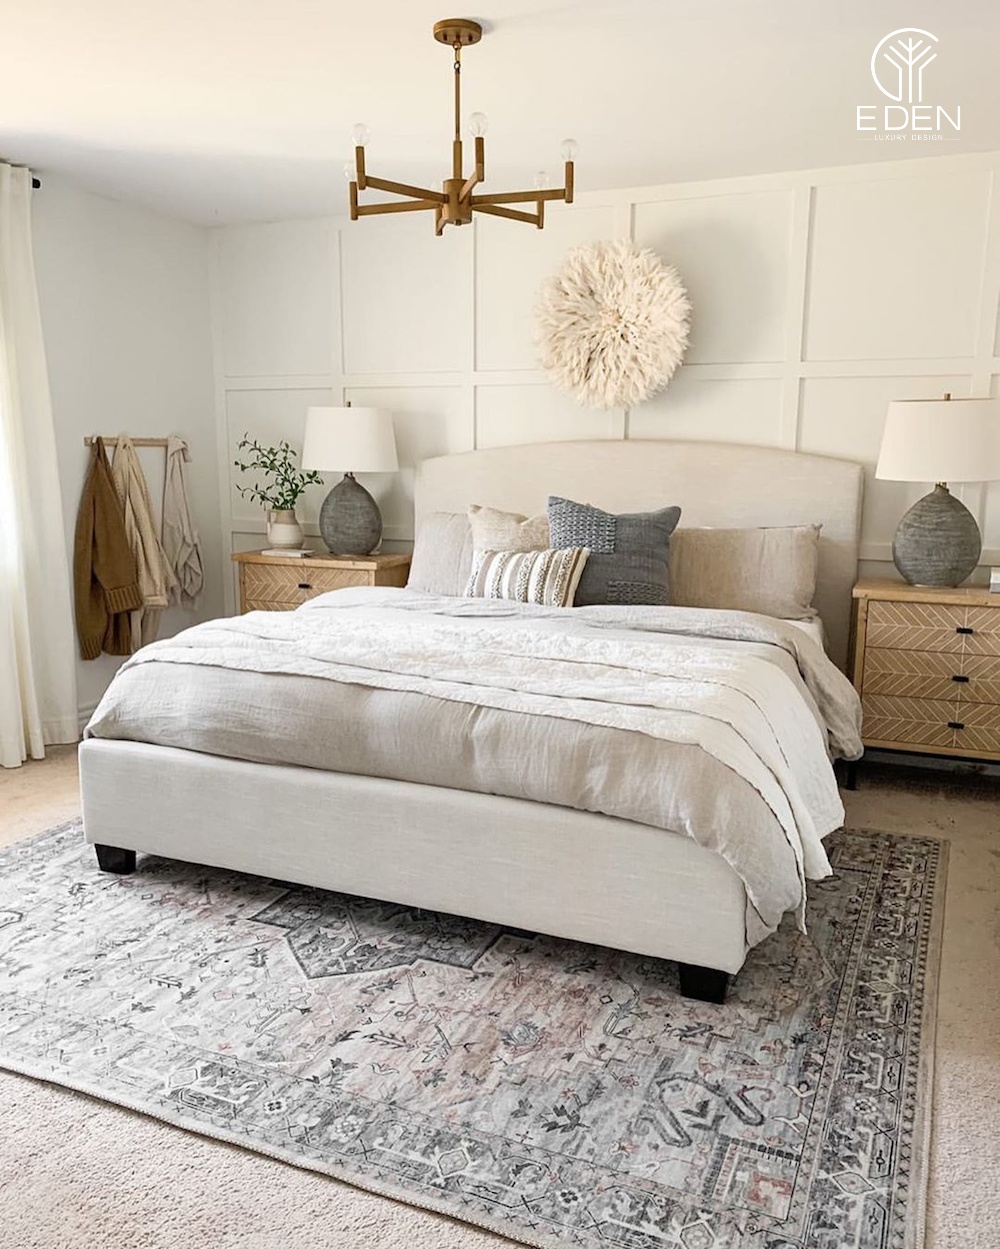 Mẫu thảm hoa văn độc lạ làm điểm nhấn cho phòng ngủ phong cách tối giản